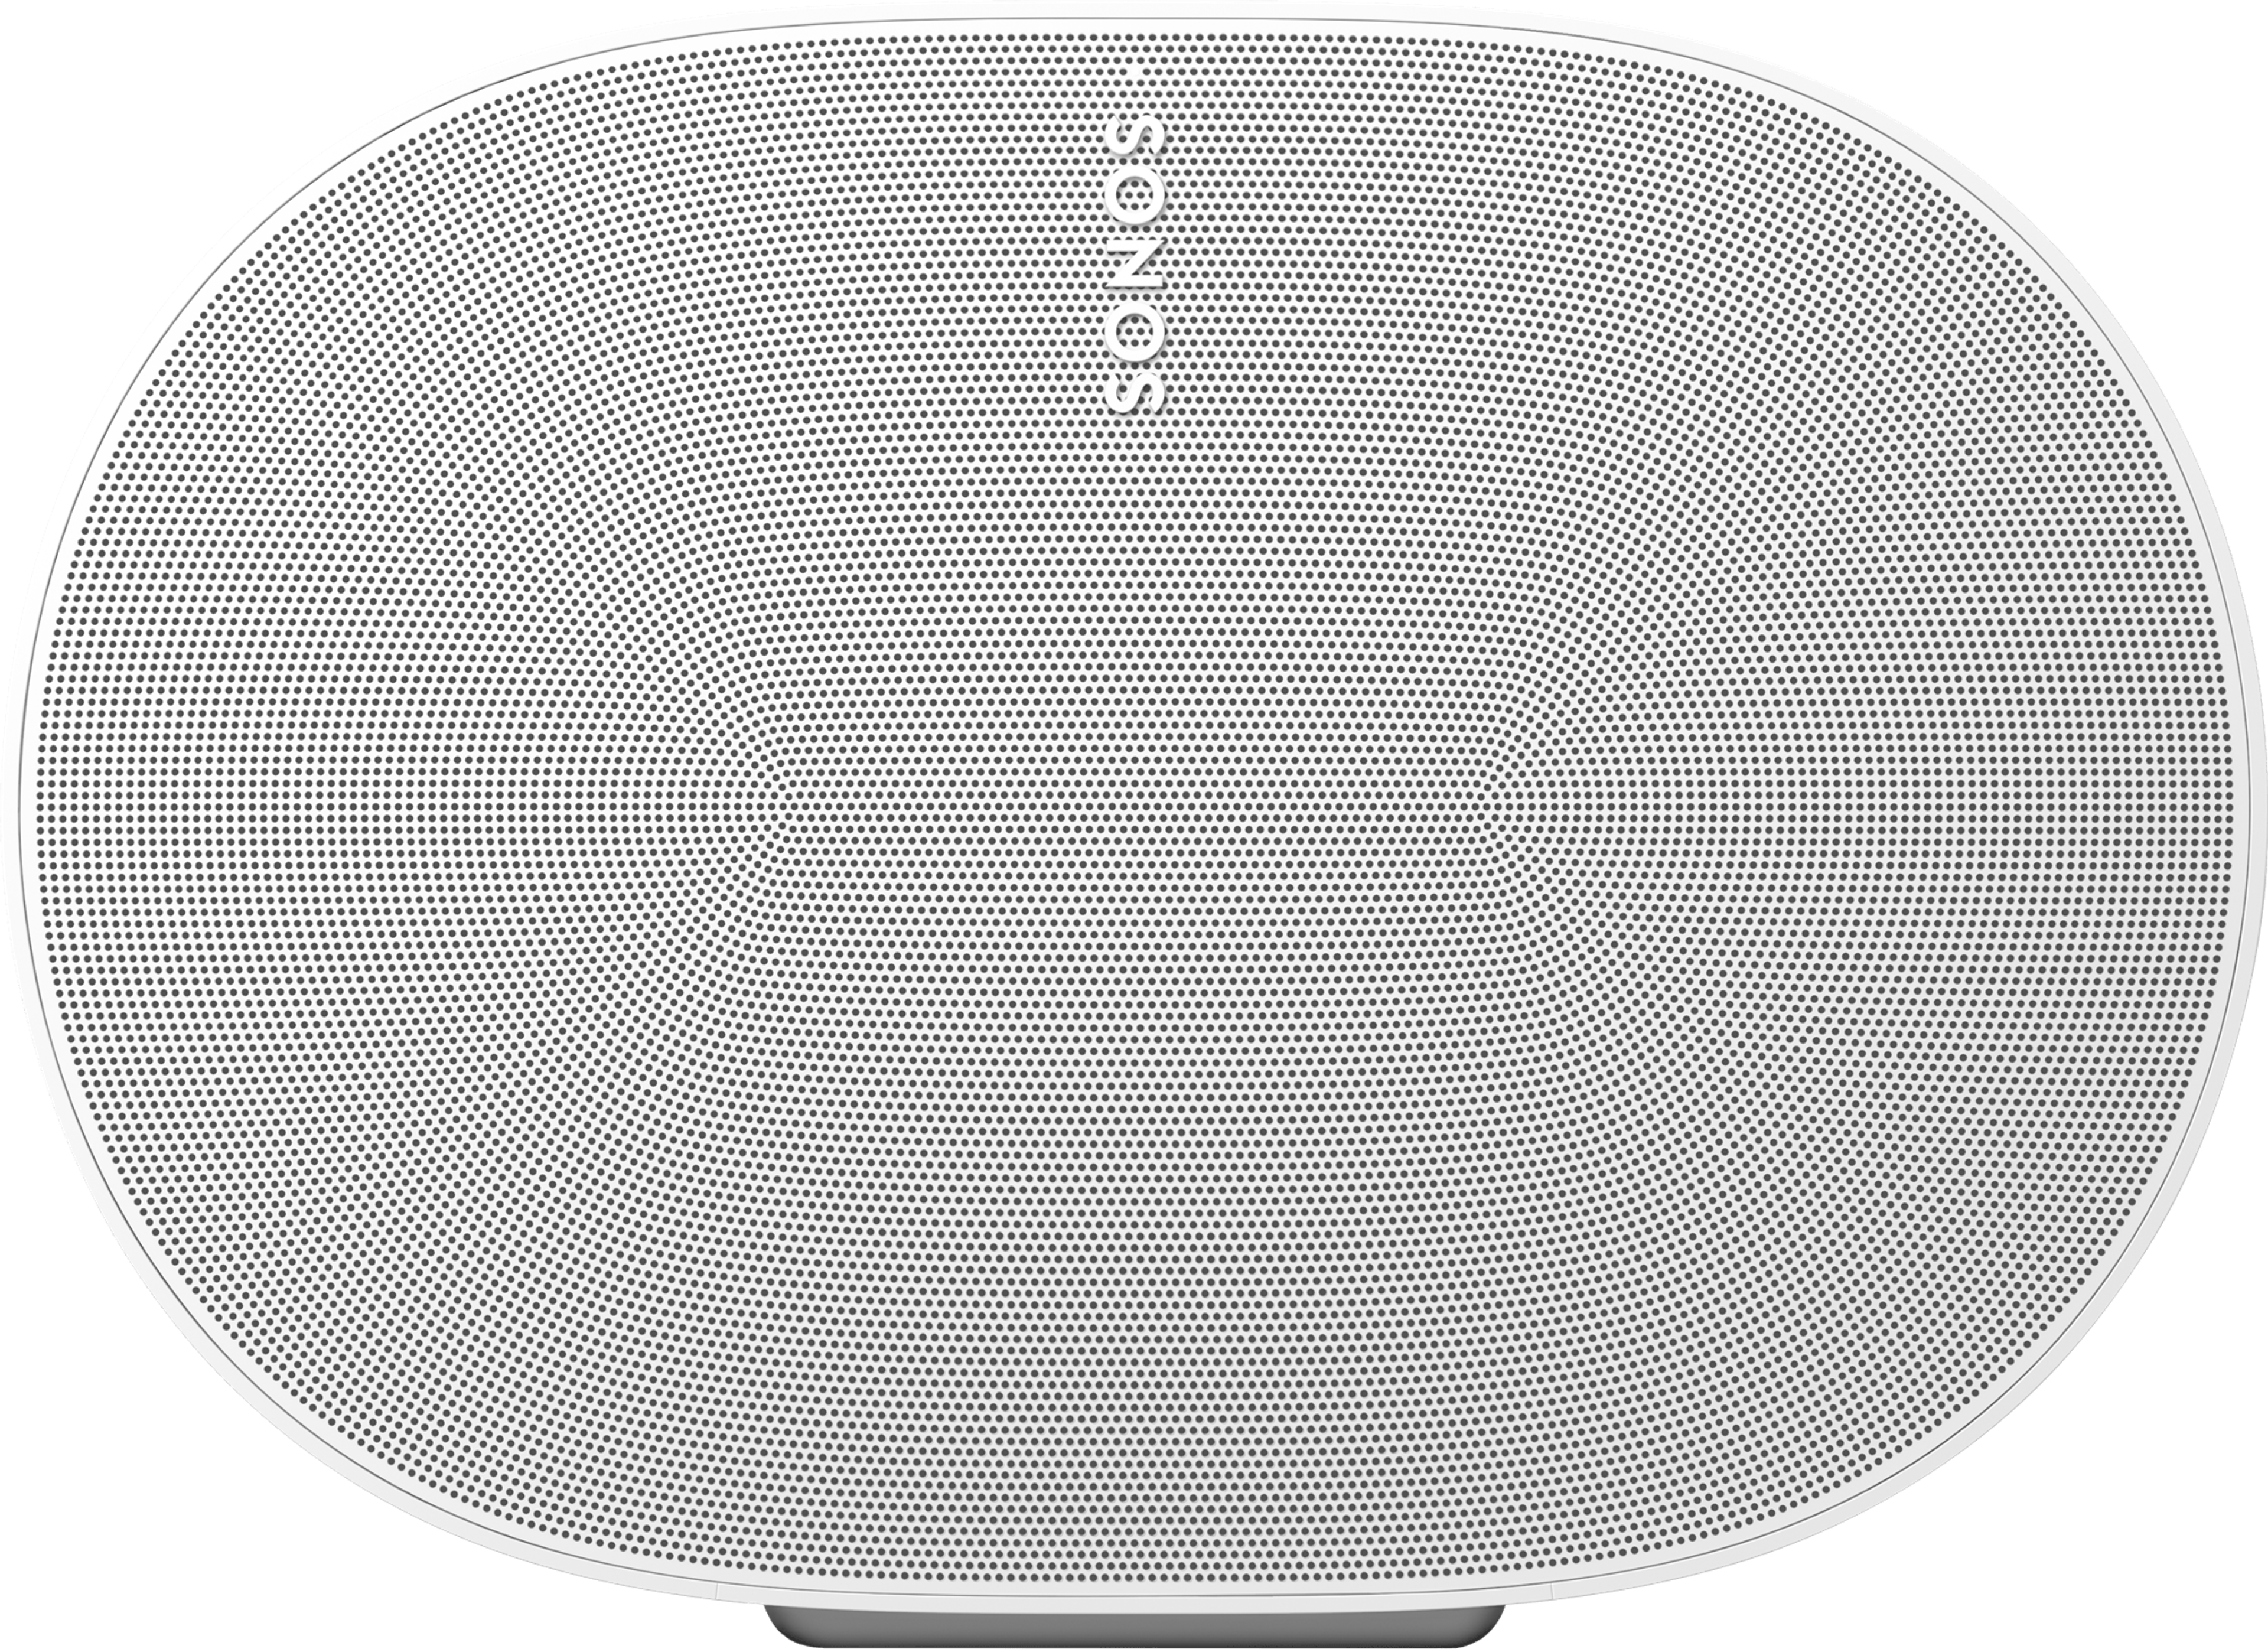 Primer plano frontal de un parlante Sonos Era 300 en blanco